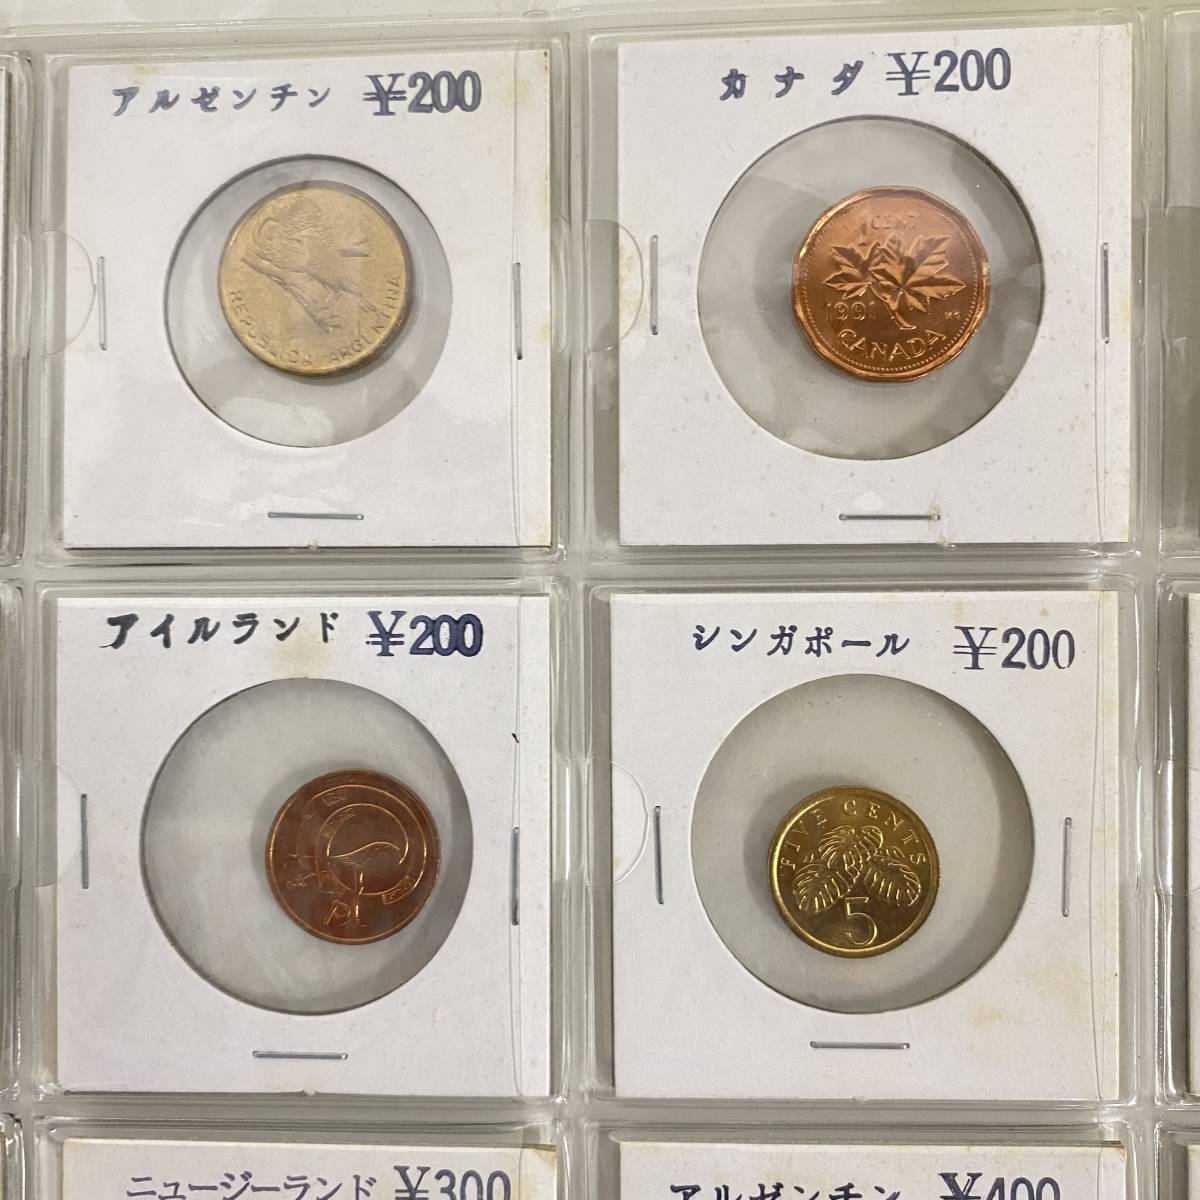 20K0280 world. coin 18 pieces set foreign sen old coin collection No.4